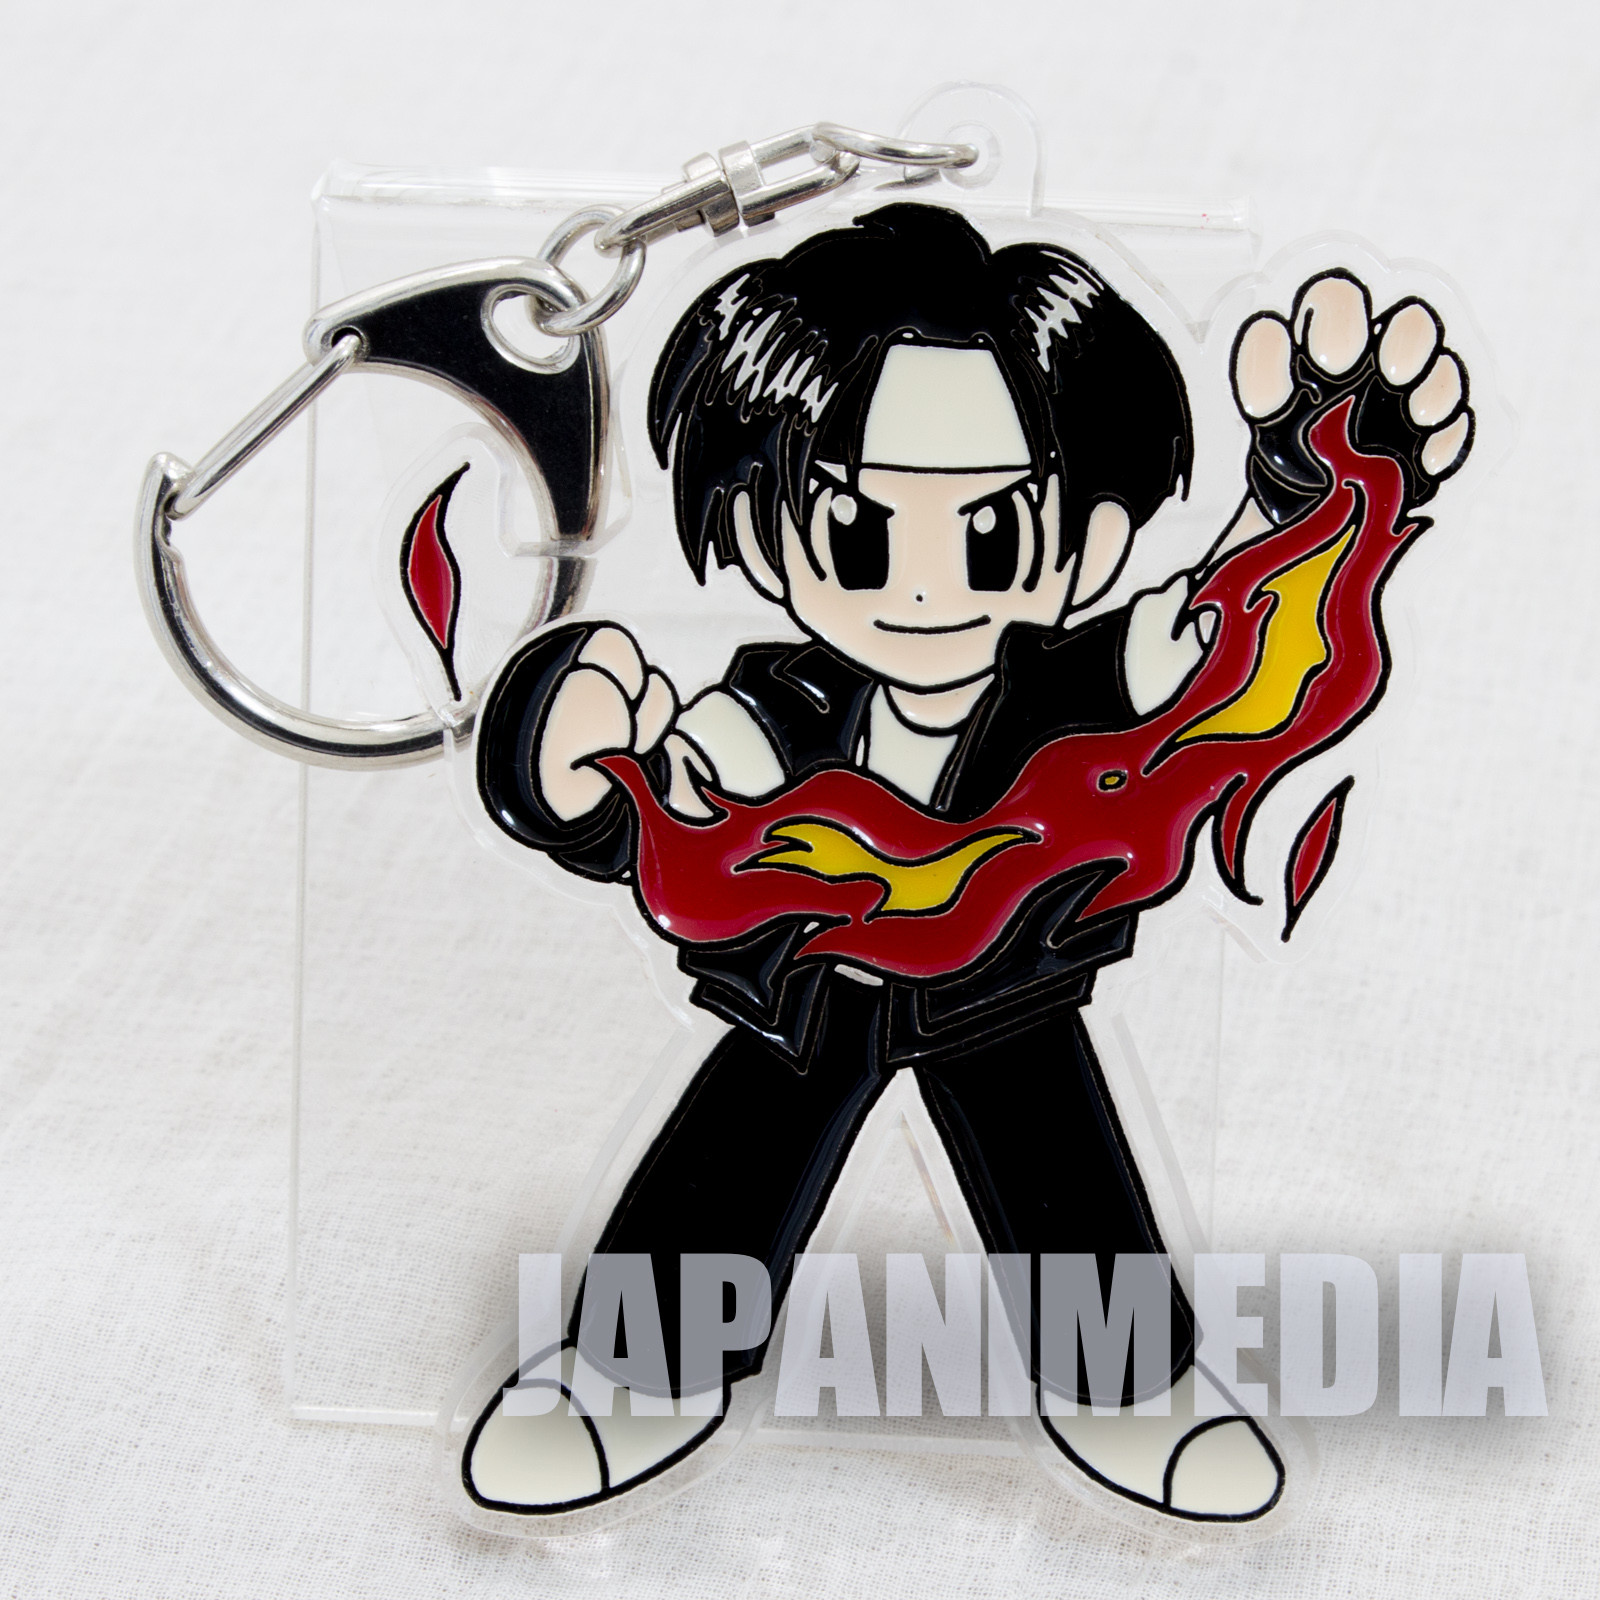 Retro King of Fighters Kyo Kusanagi Acrylic Mascot Keychain SNK 1996 JAPAN